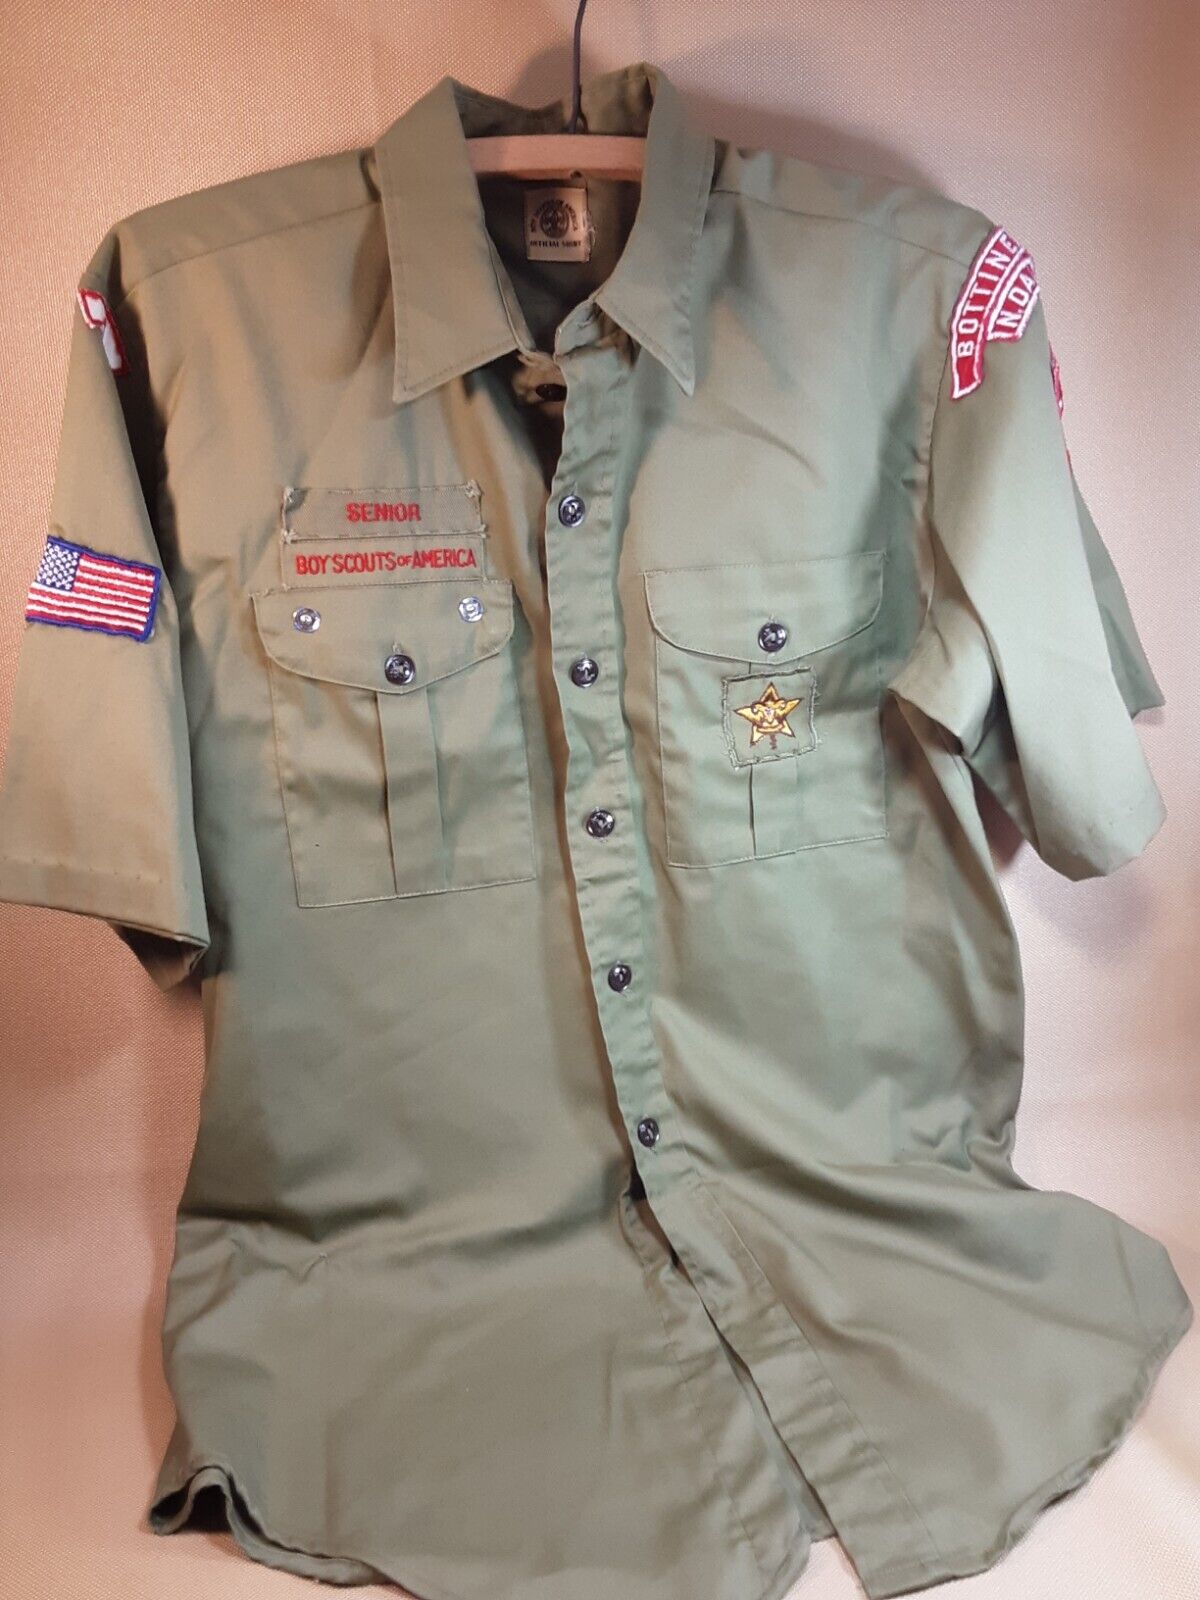 Vintage Senior Boy Scout Shirt BSA Instructor Uniform Size Large ND Patches